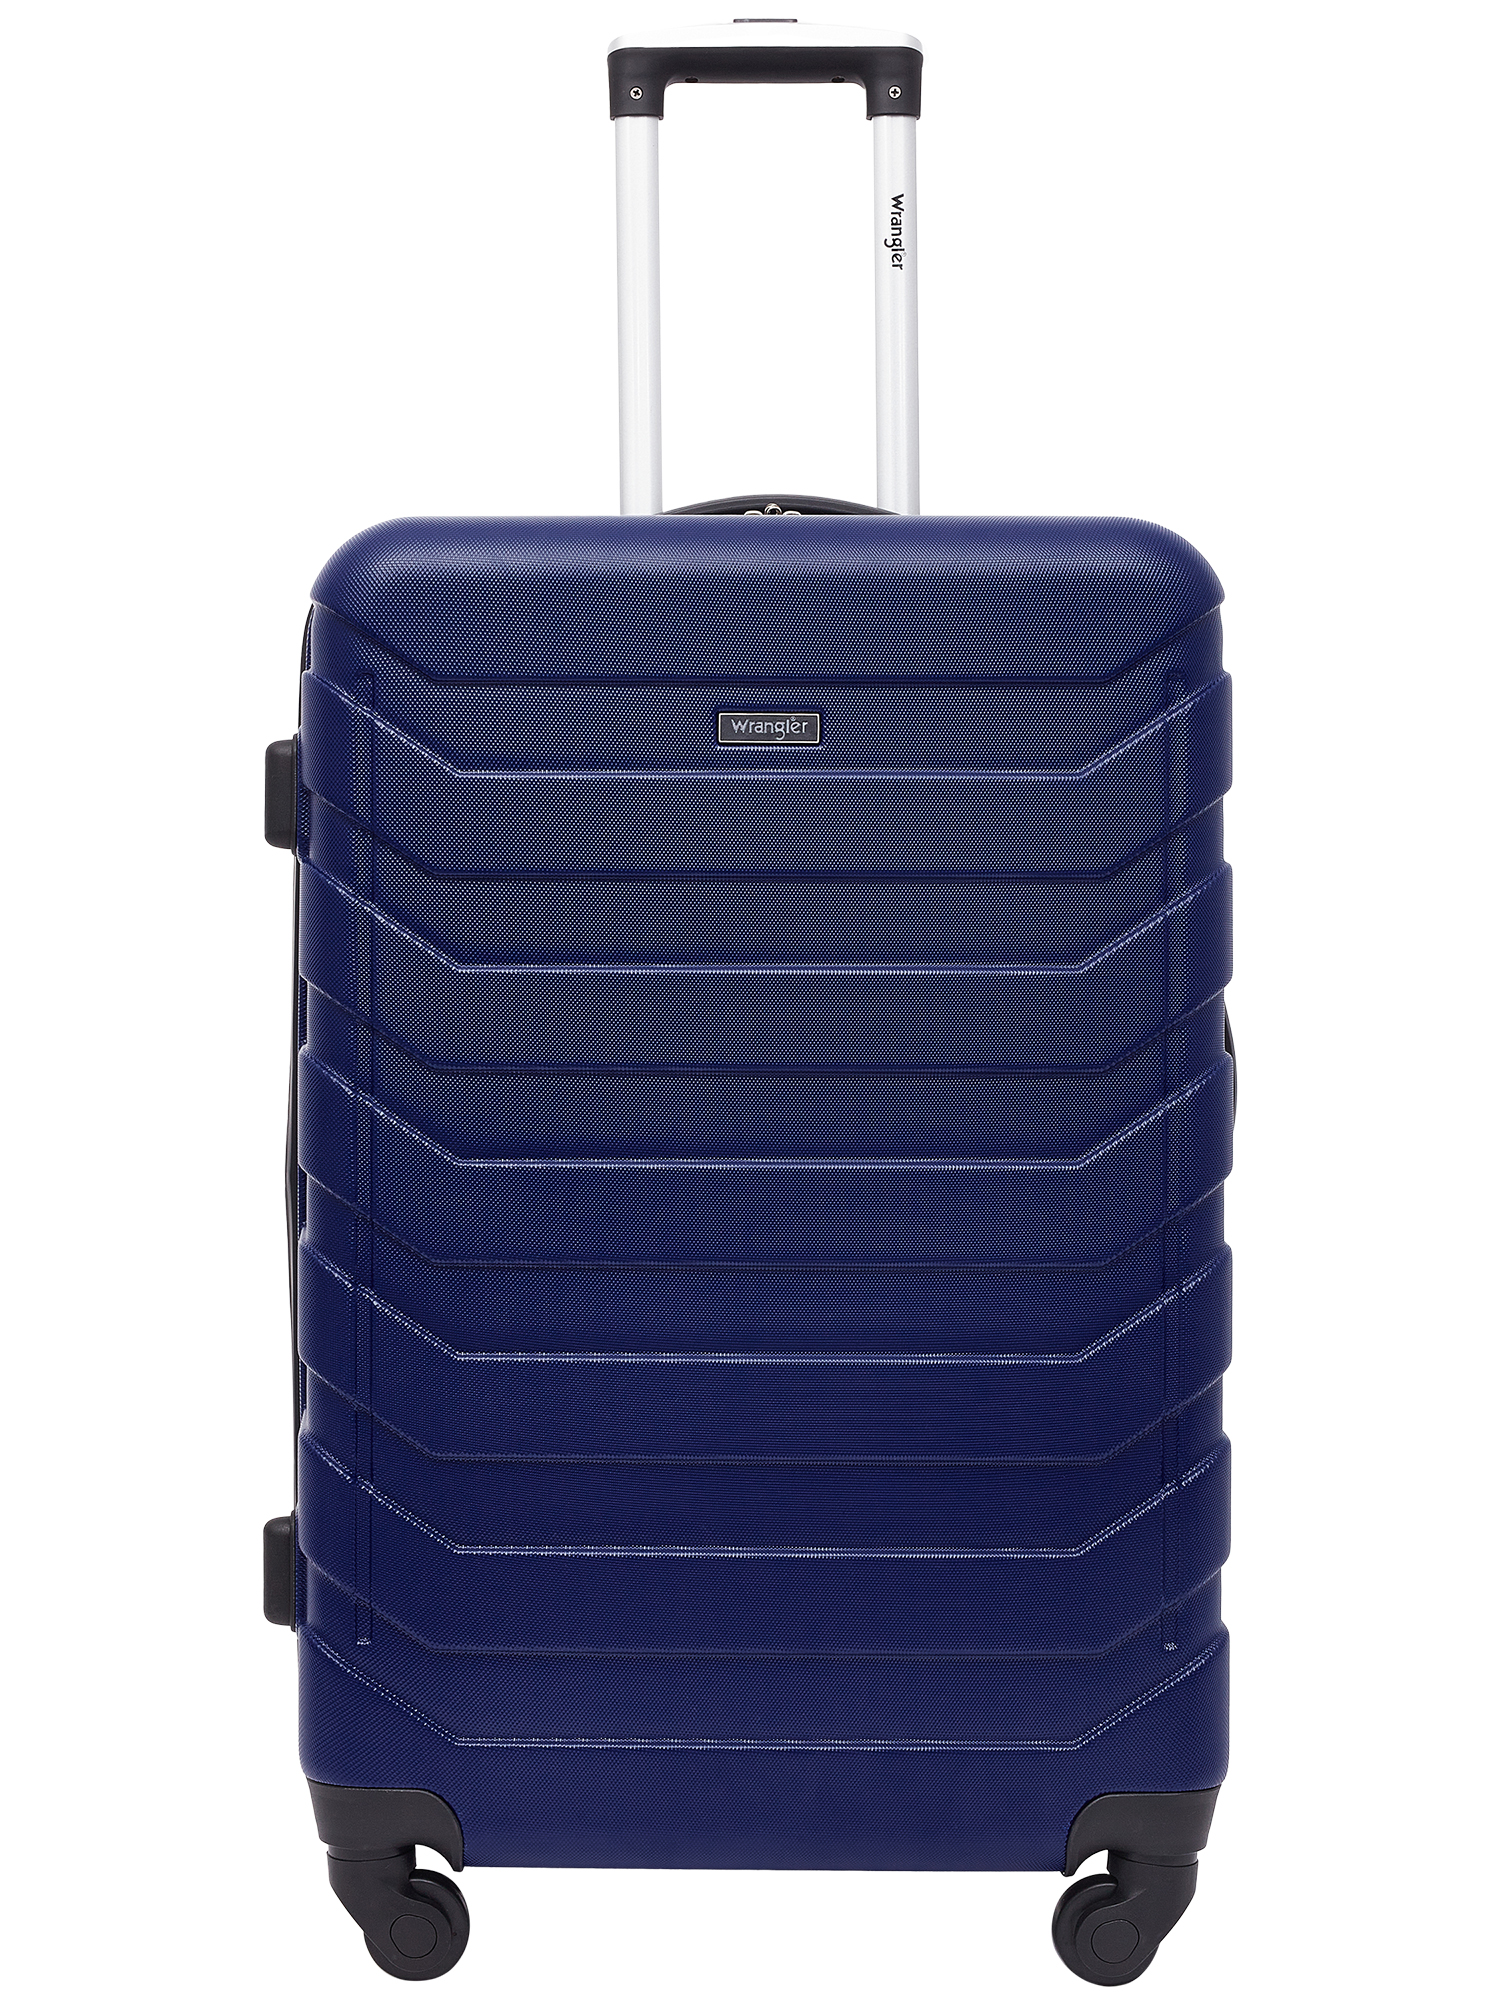 Wrangler 4 Piece Rolling Hardside Luggage Set, Blue - image 2 of 9